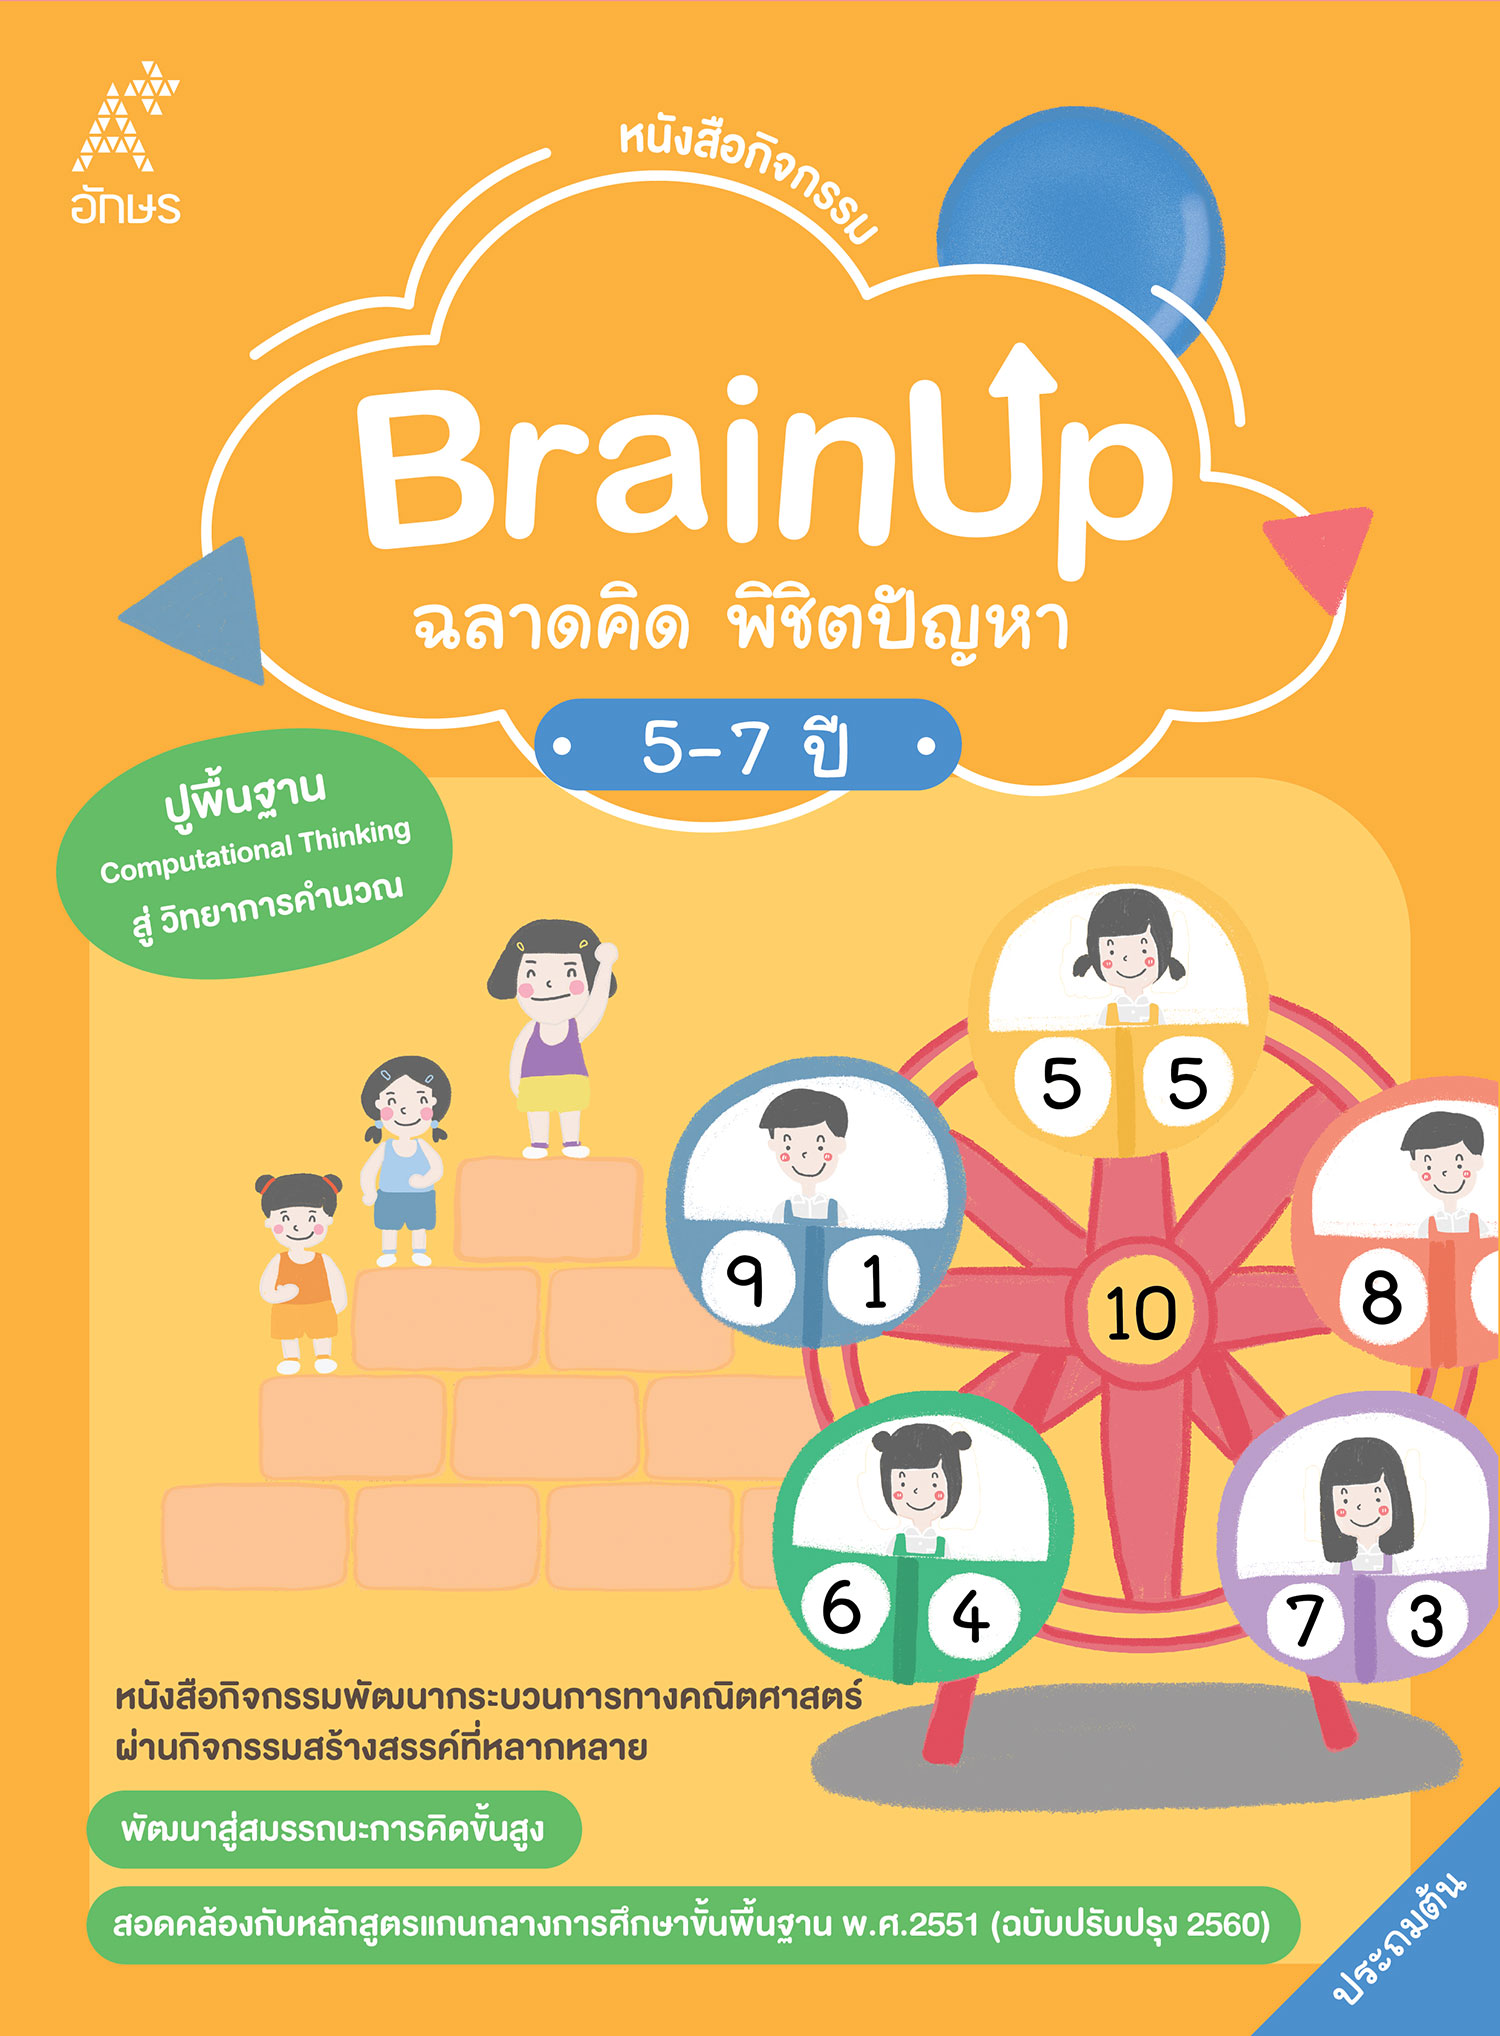 หนังสือกิจกรรม BrainUp ฉลาดคิด พิชิตปัญหา อายุ 5-7 ปี